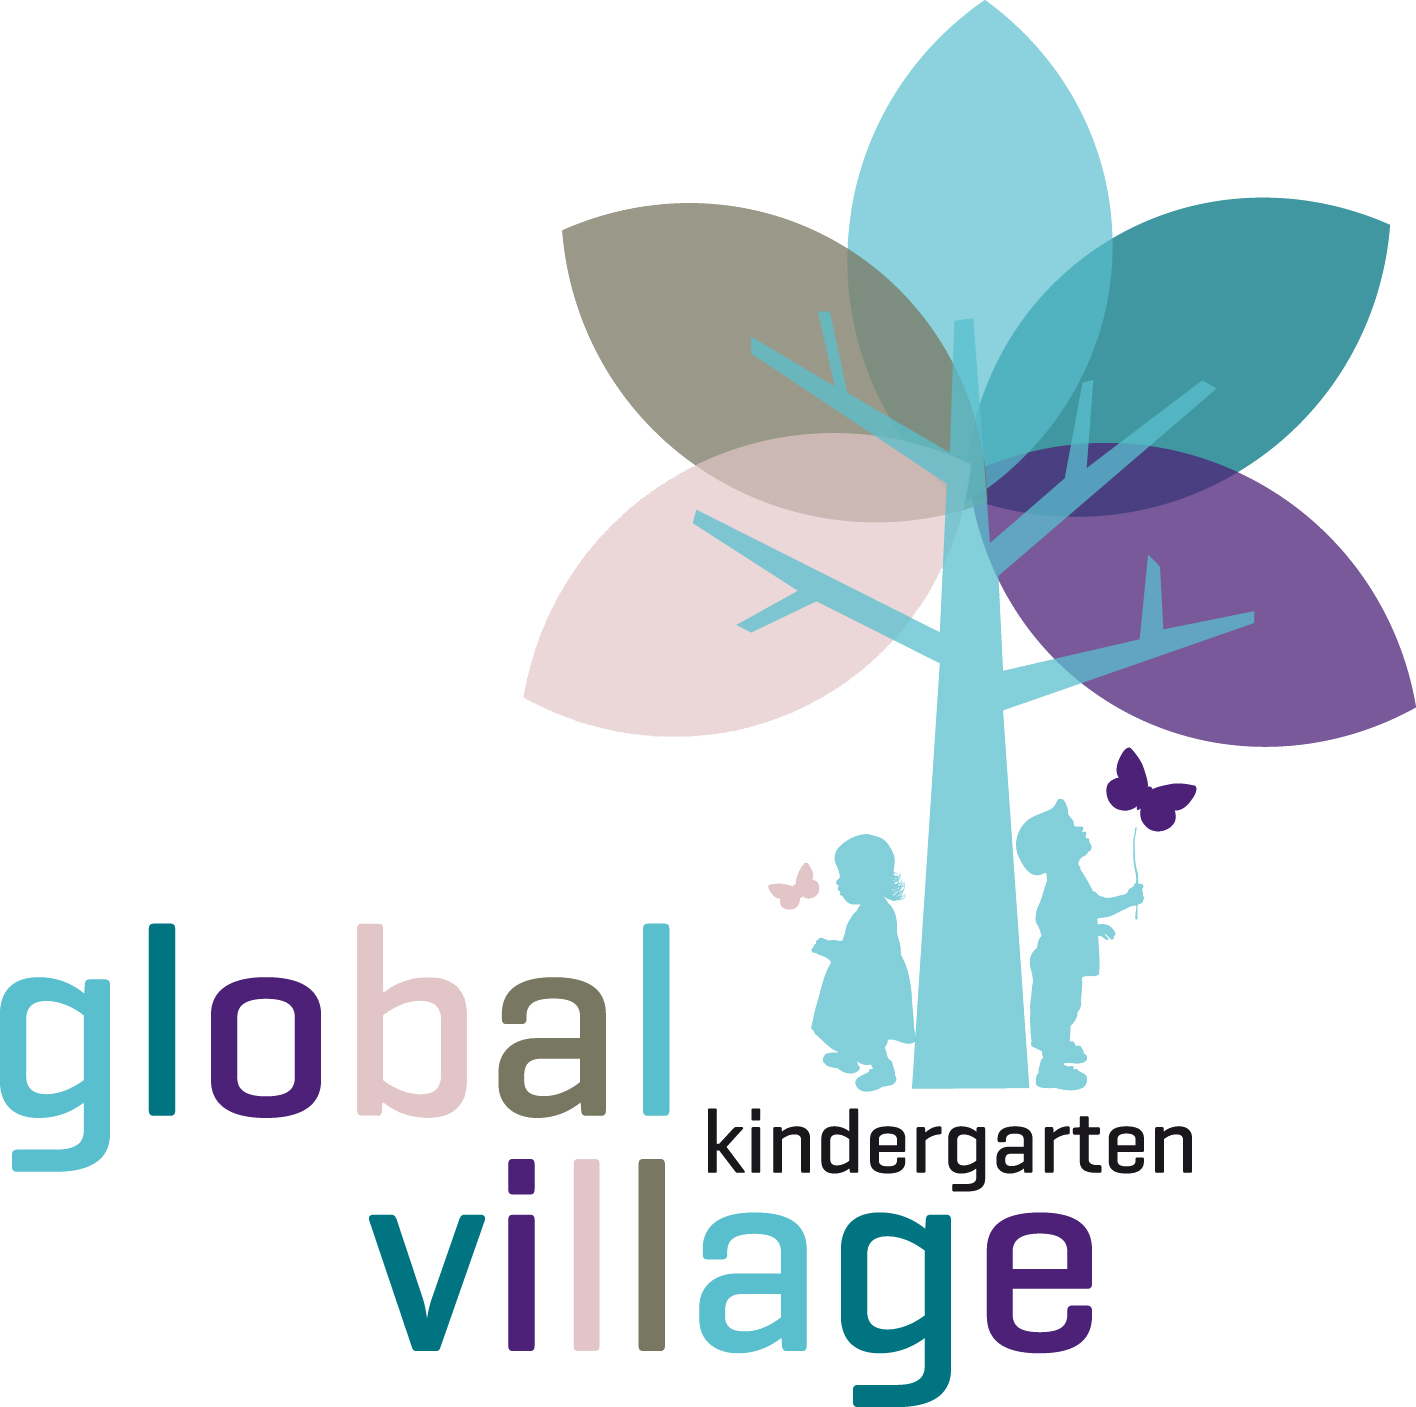 anmeldungsbest-tigung-global-village-kindergarten